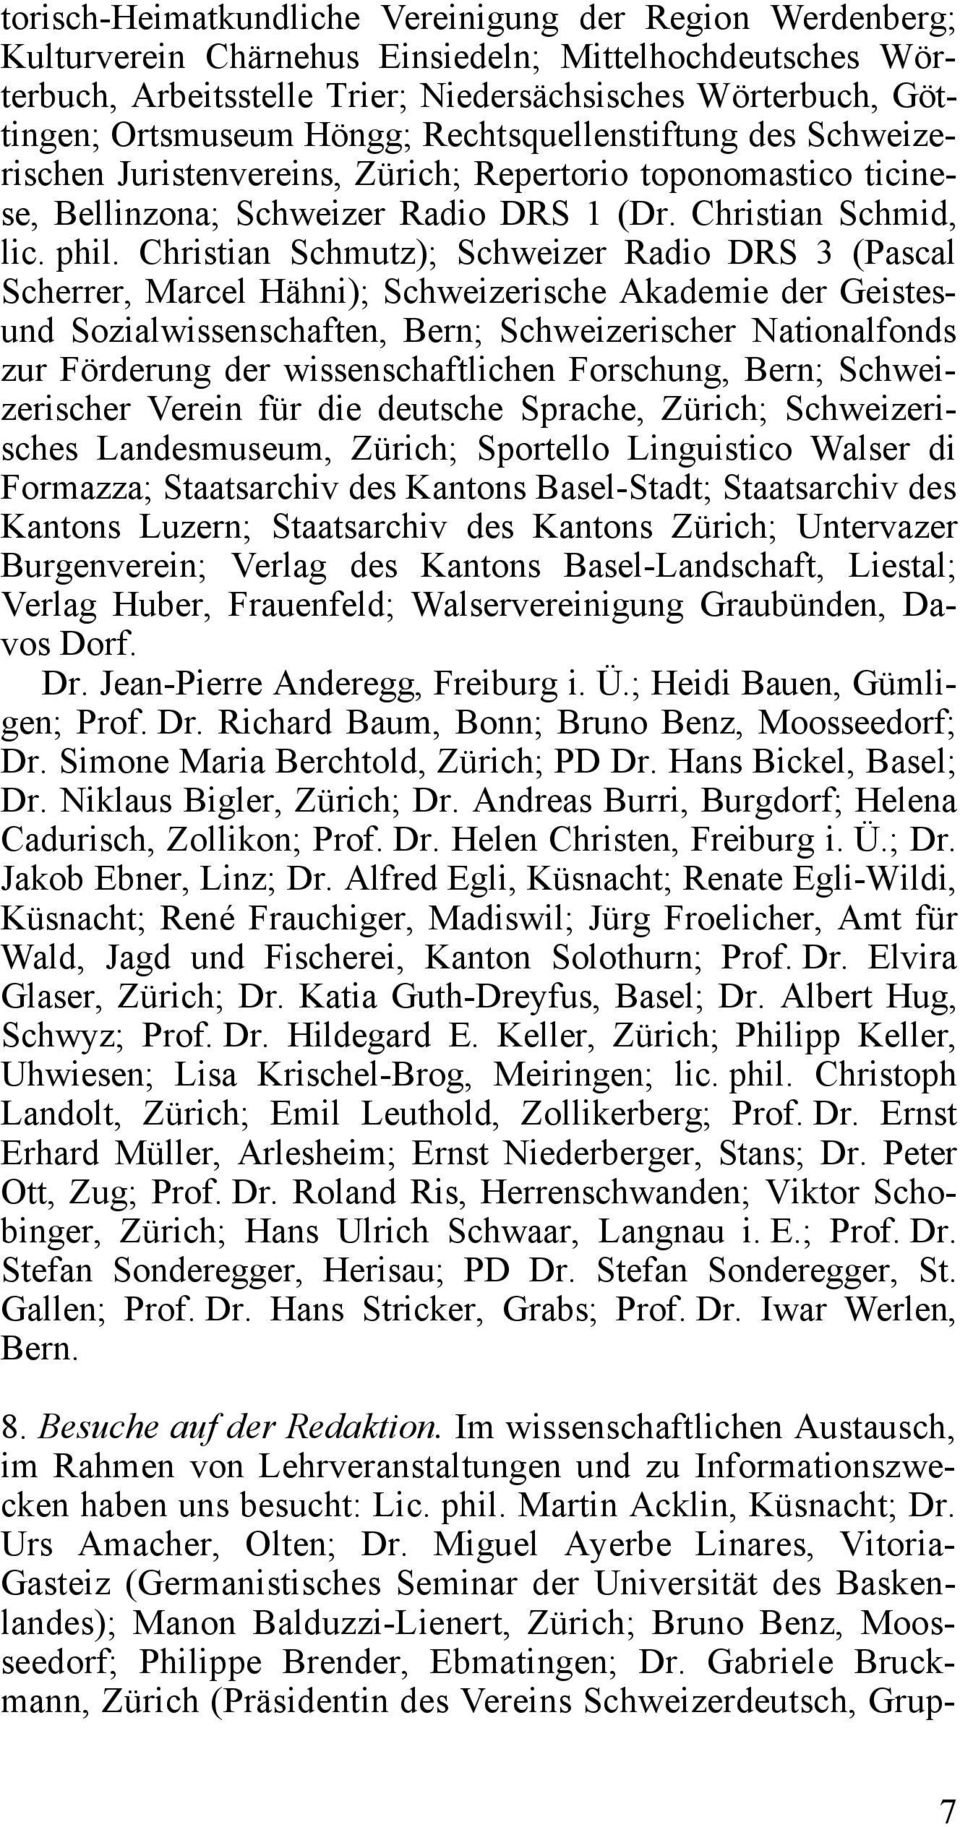 Christian Schmutz); Schweizer Radio DRS 3 (Pascal Scherrer, Marcel Hähni); Schweizerische Akademie der Geistesund Sozialwissenschaften, Bern; Schweizerischer Nationalfonds zur Förderung der